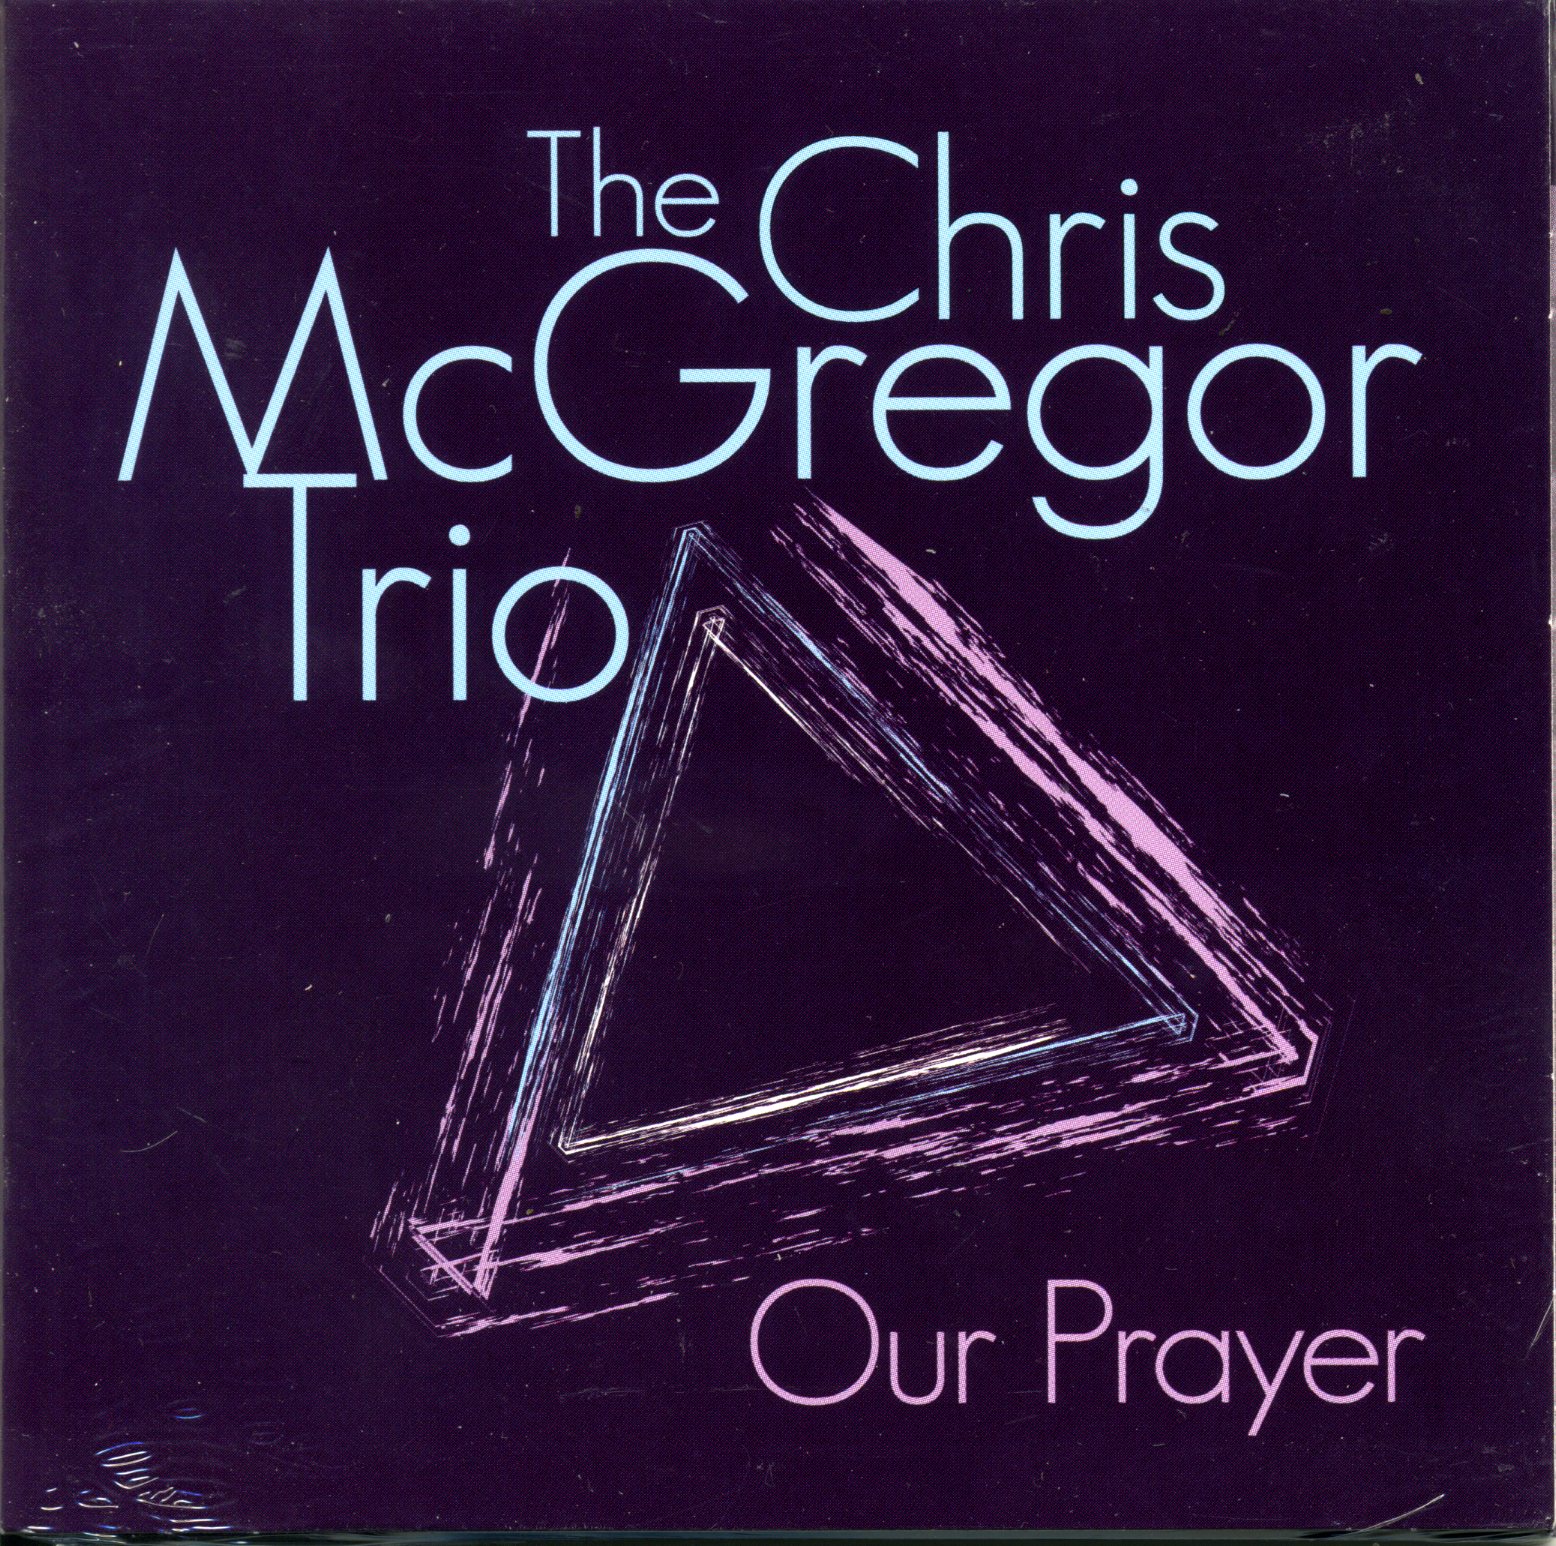 McGREGOR TRIO, CHRIS (The)